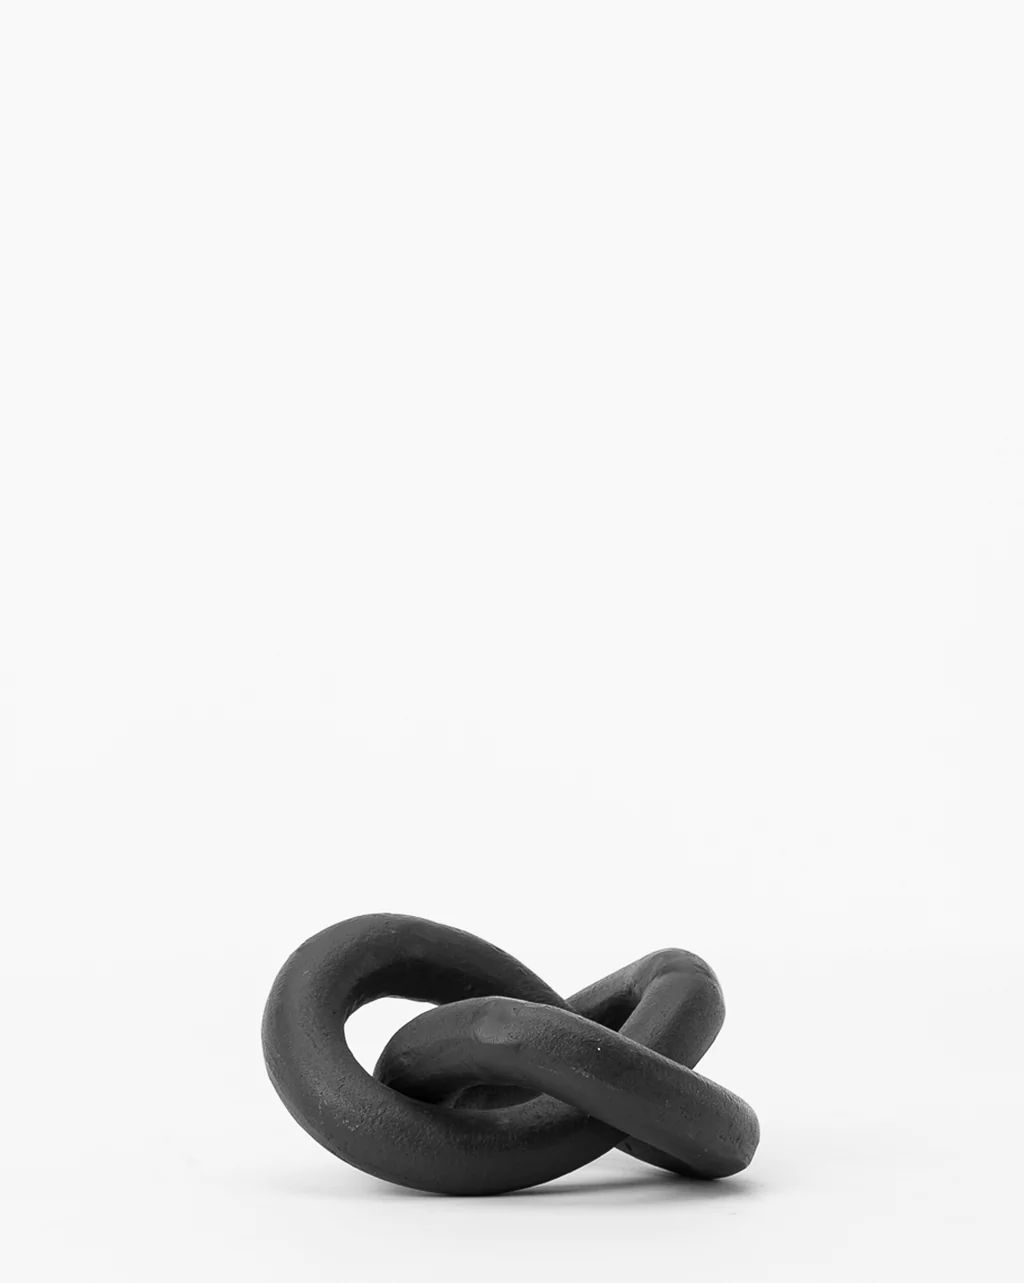 Black Infinity Loop | McGee & Co.